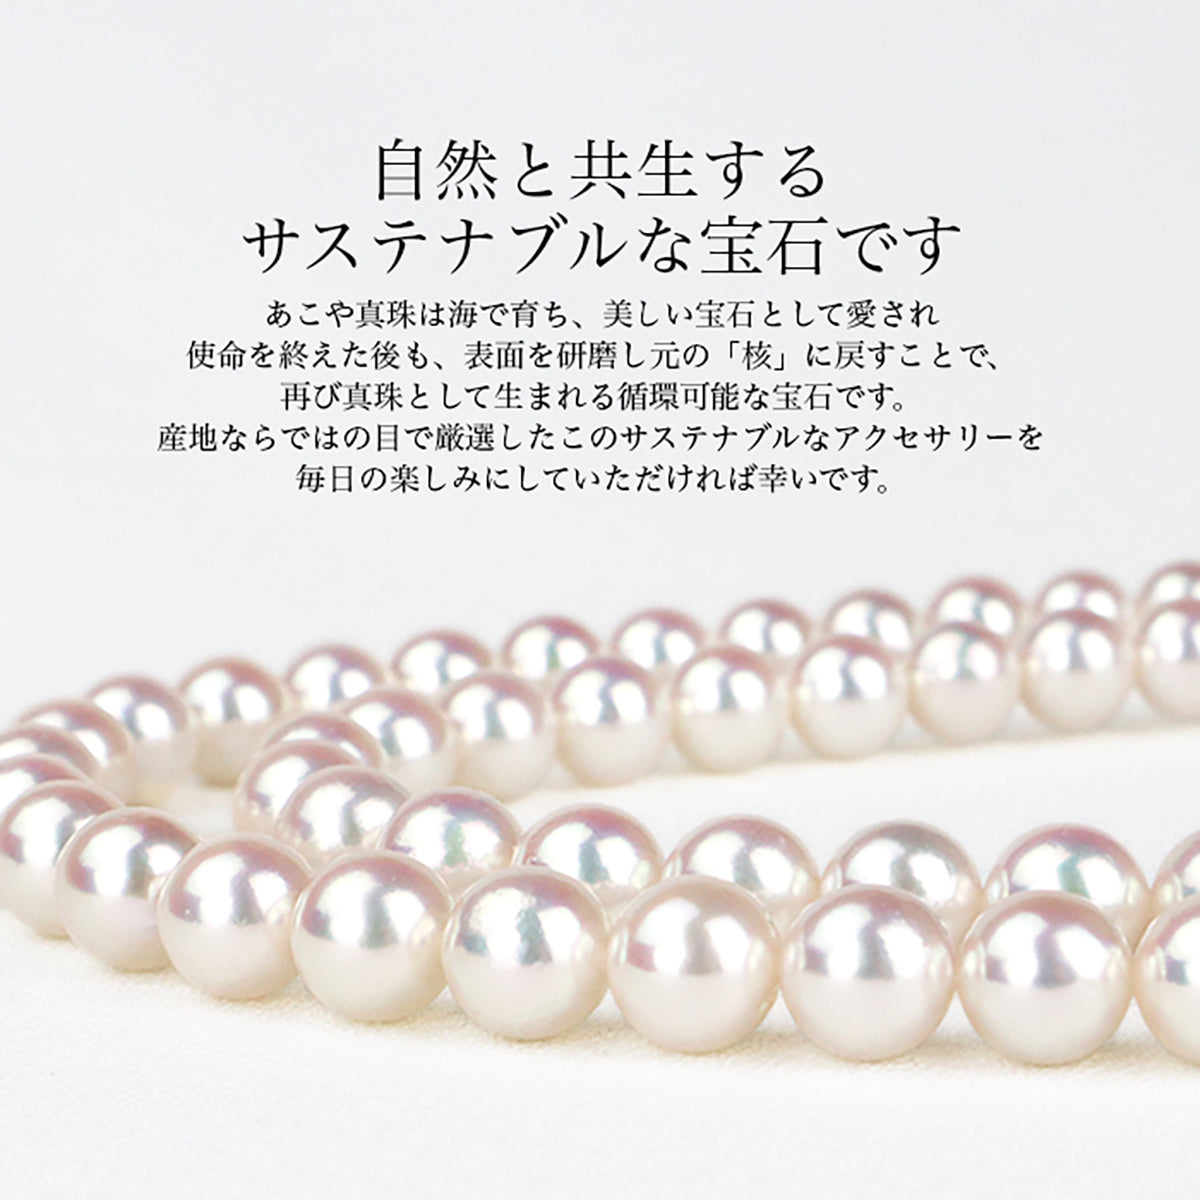 花珠真珠 フォーマルネックレス 2点セット【7.0-7.5mm】 (ピアス